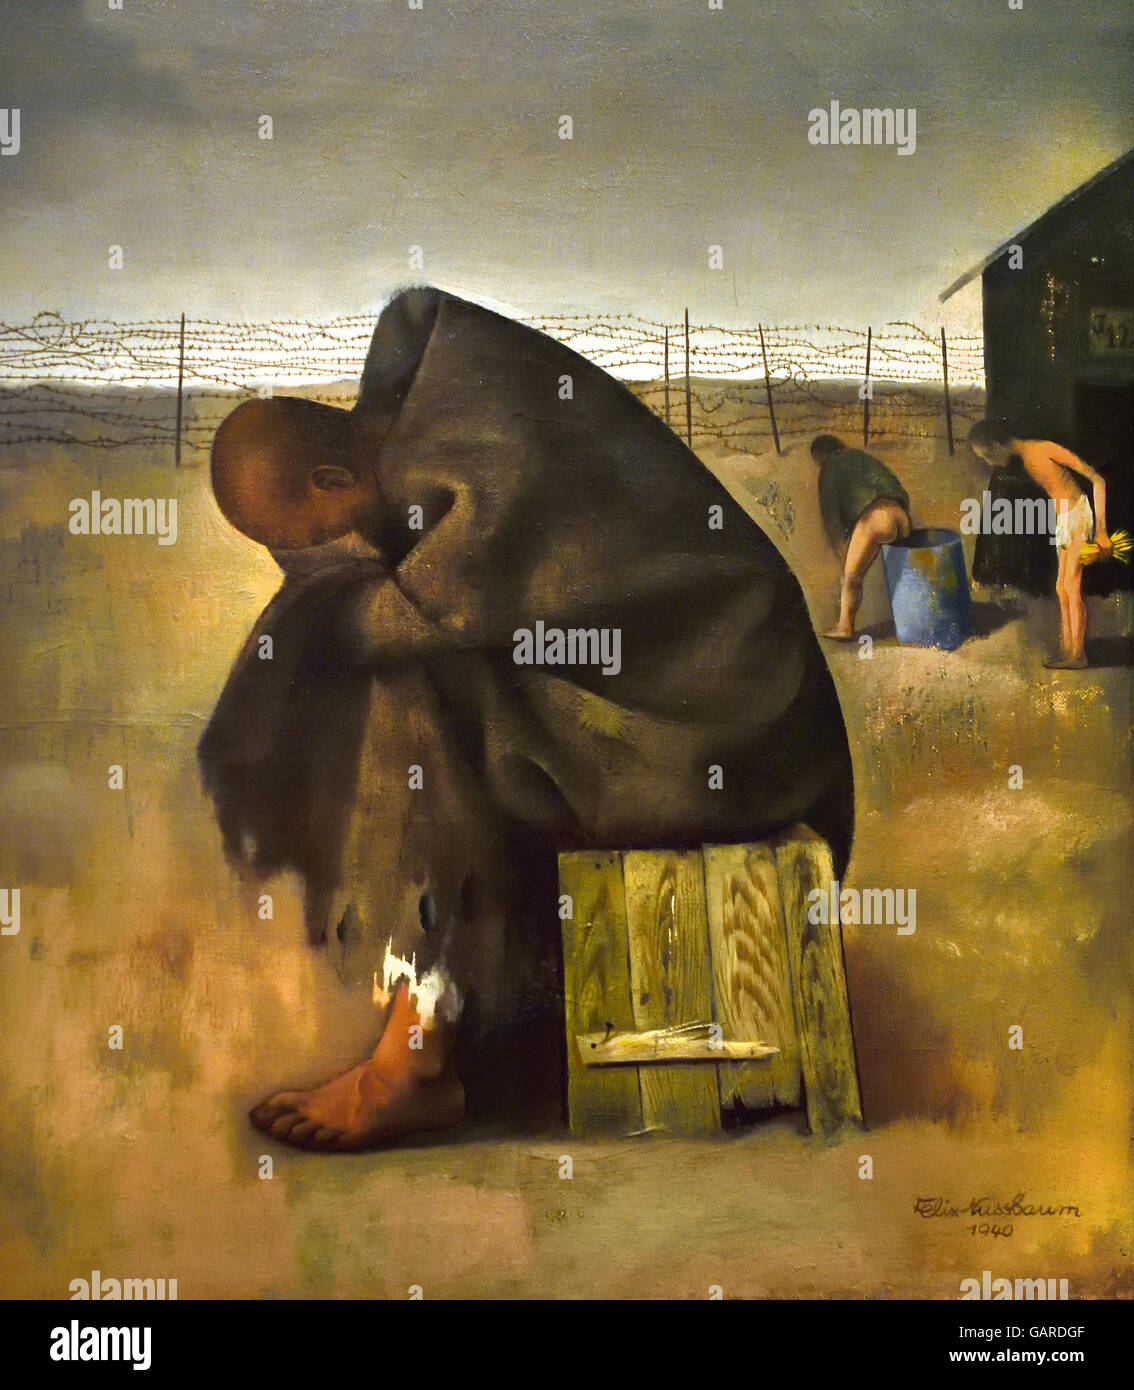 Prigionieri - 1940 Felix Nussbaum 1904 - 1944 Auschwitz,Tedesco pittore ebreo la Germania nazista ebraico pittore surrealista. Nussbaum la illustrazione fornisce un raro sguardo nella essenza di un individuo tra le vittime dell'Olocausto. Foto Stock